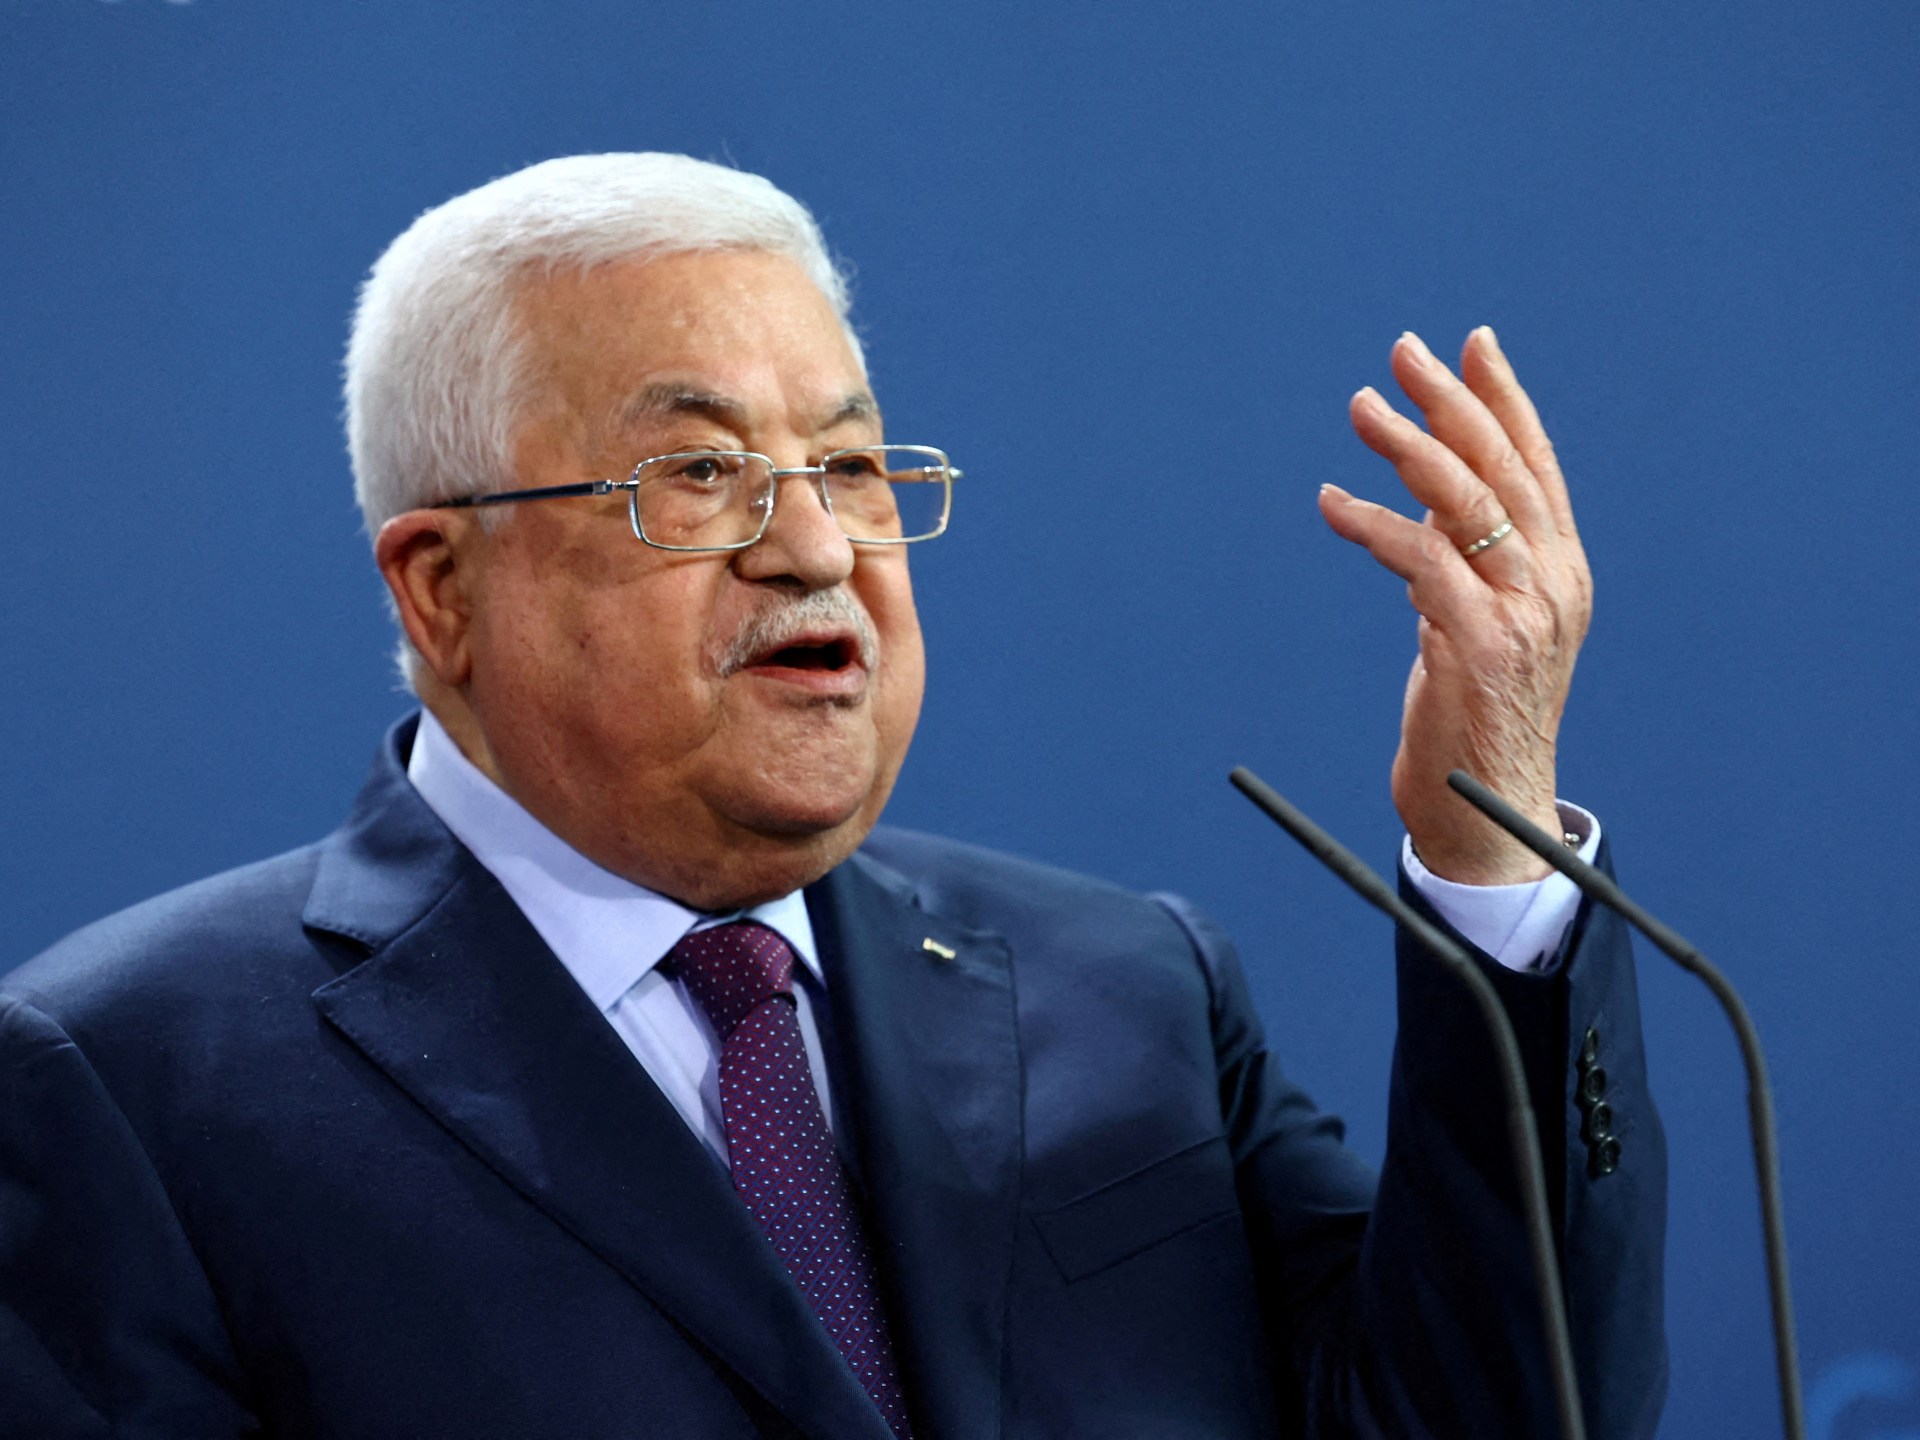 غضب متصاعد في الضفة ضد عباس والسلطة الفلسطينية | أخبار – البوكس نيوز